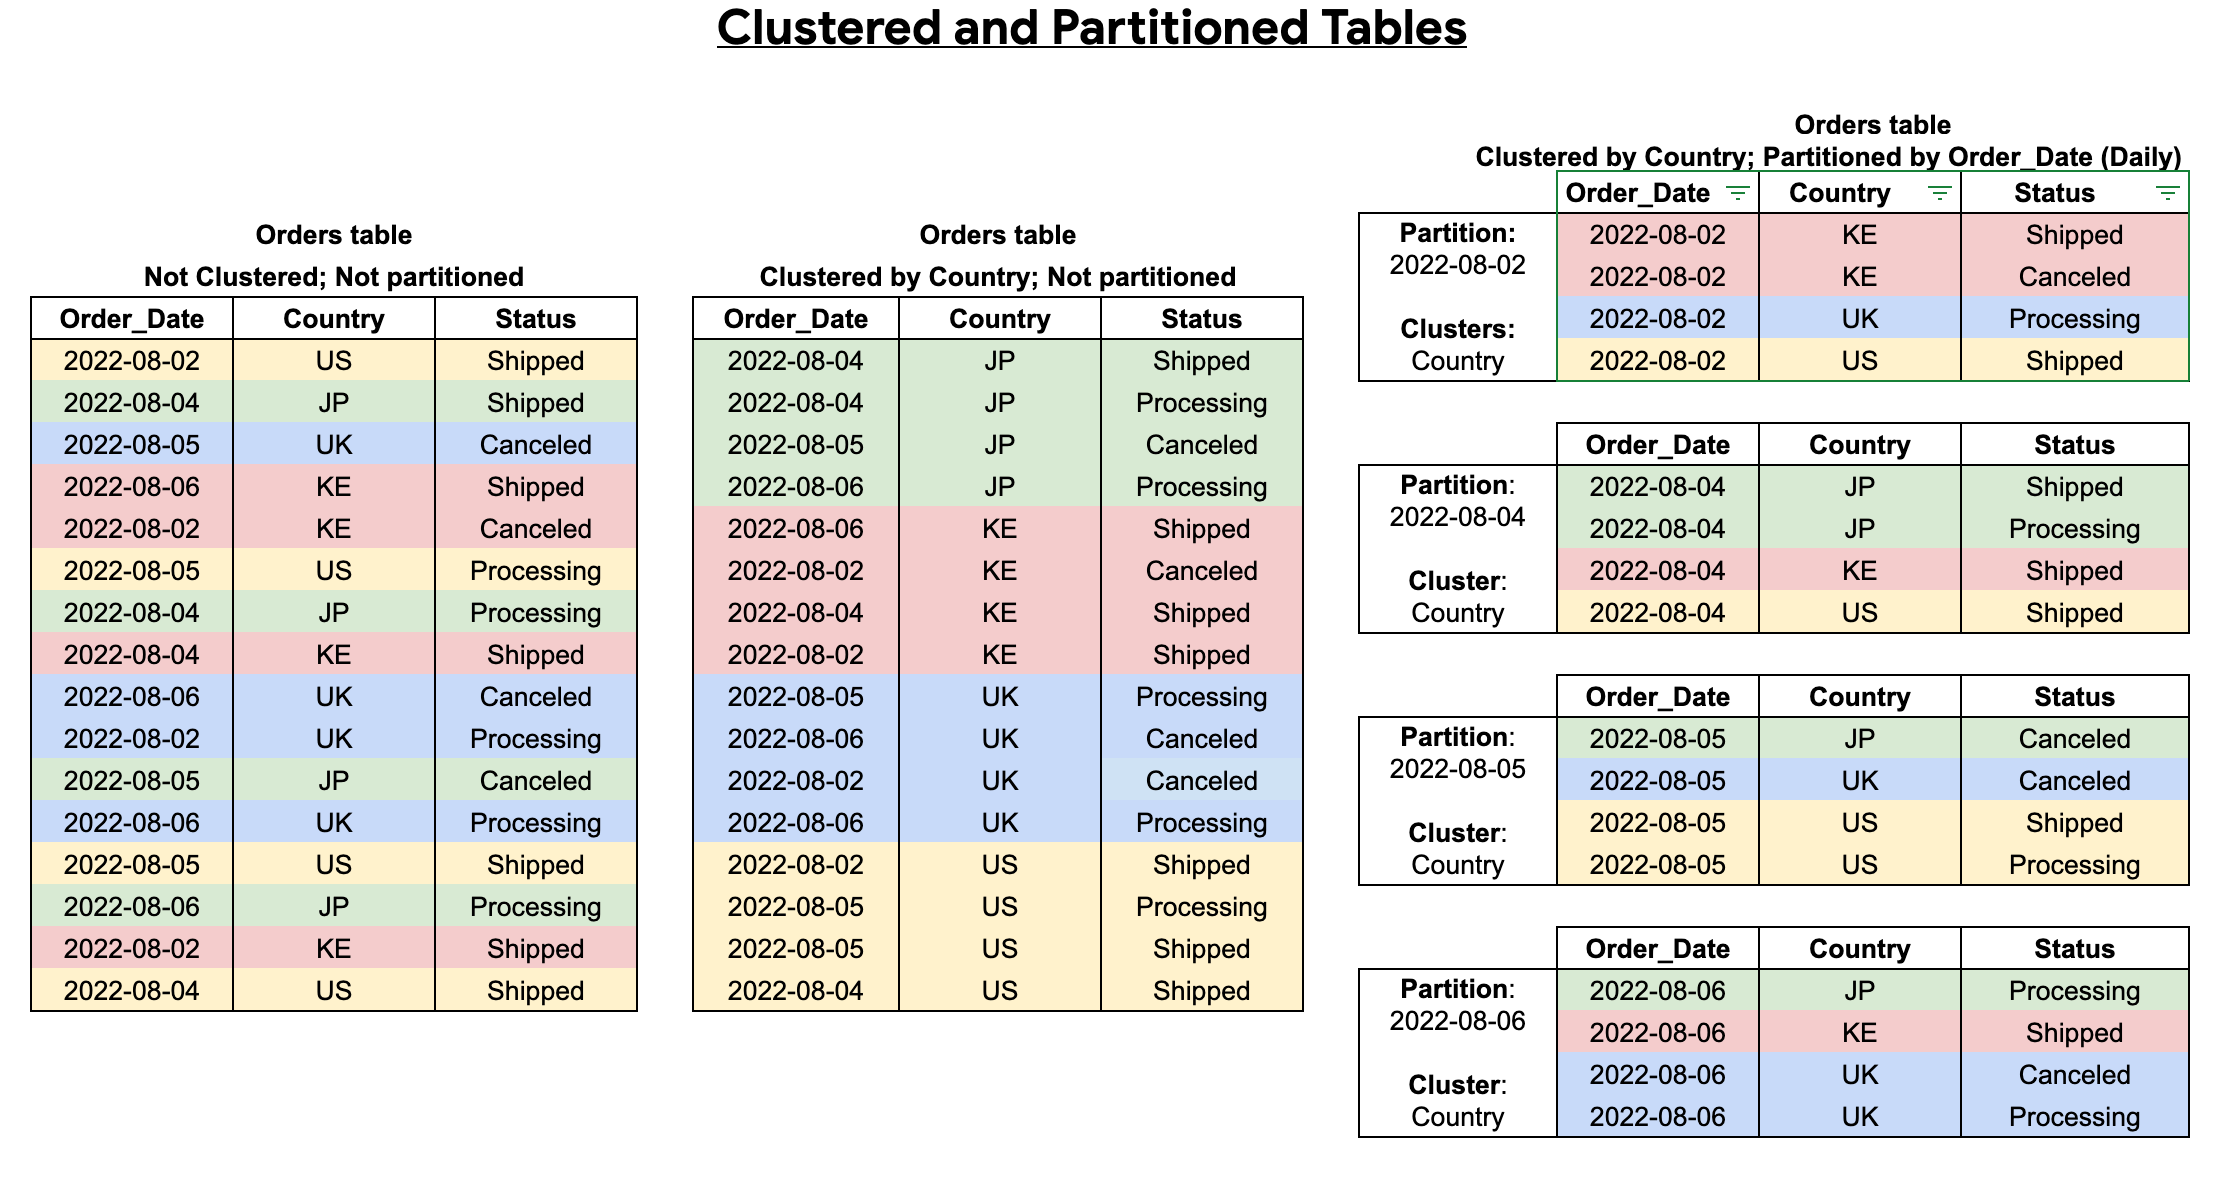 クラスタ化またはパーティション分割がされていないテーブルと、クラスタ化またはパーティショニング分割されたテーブルの比較。